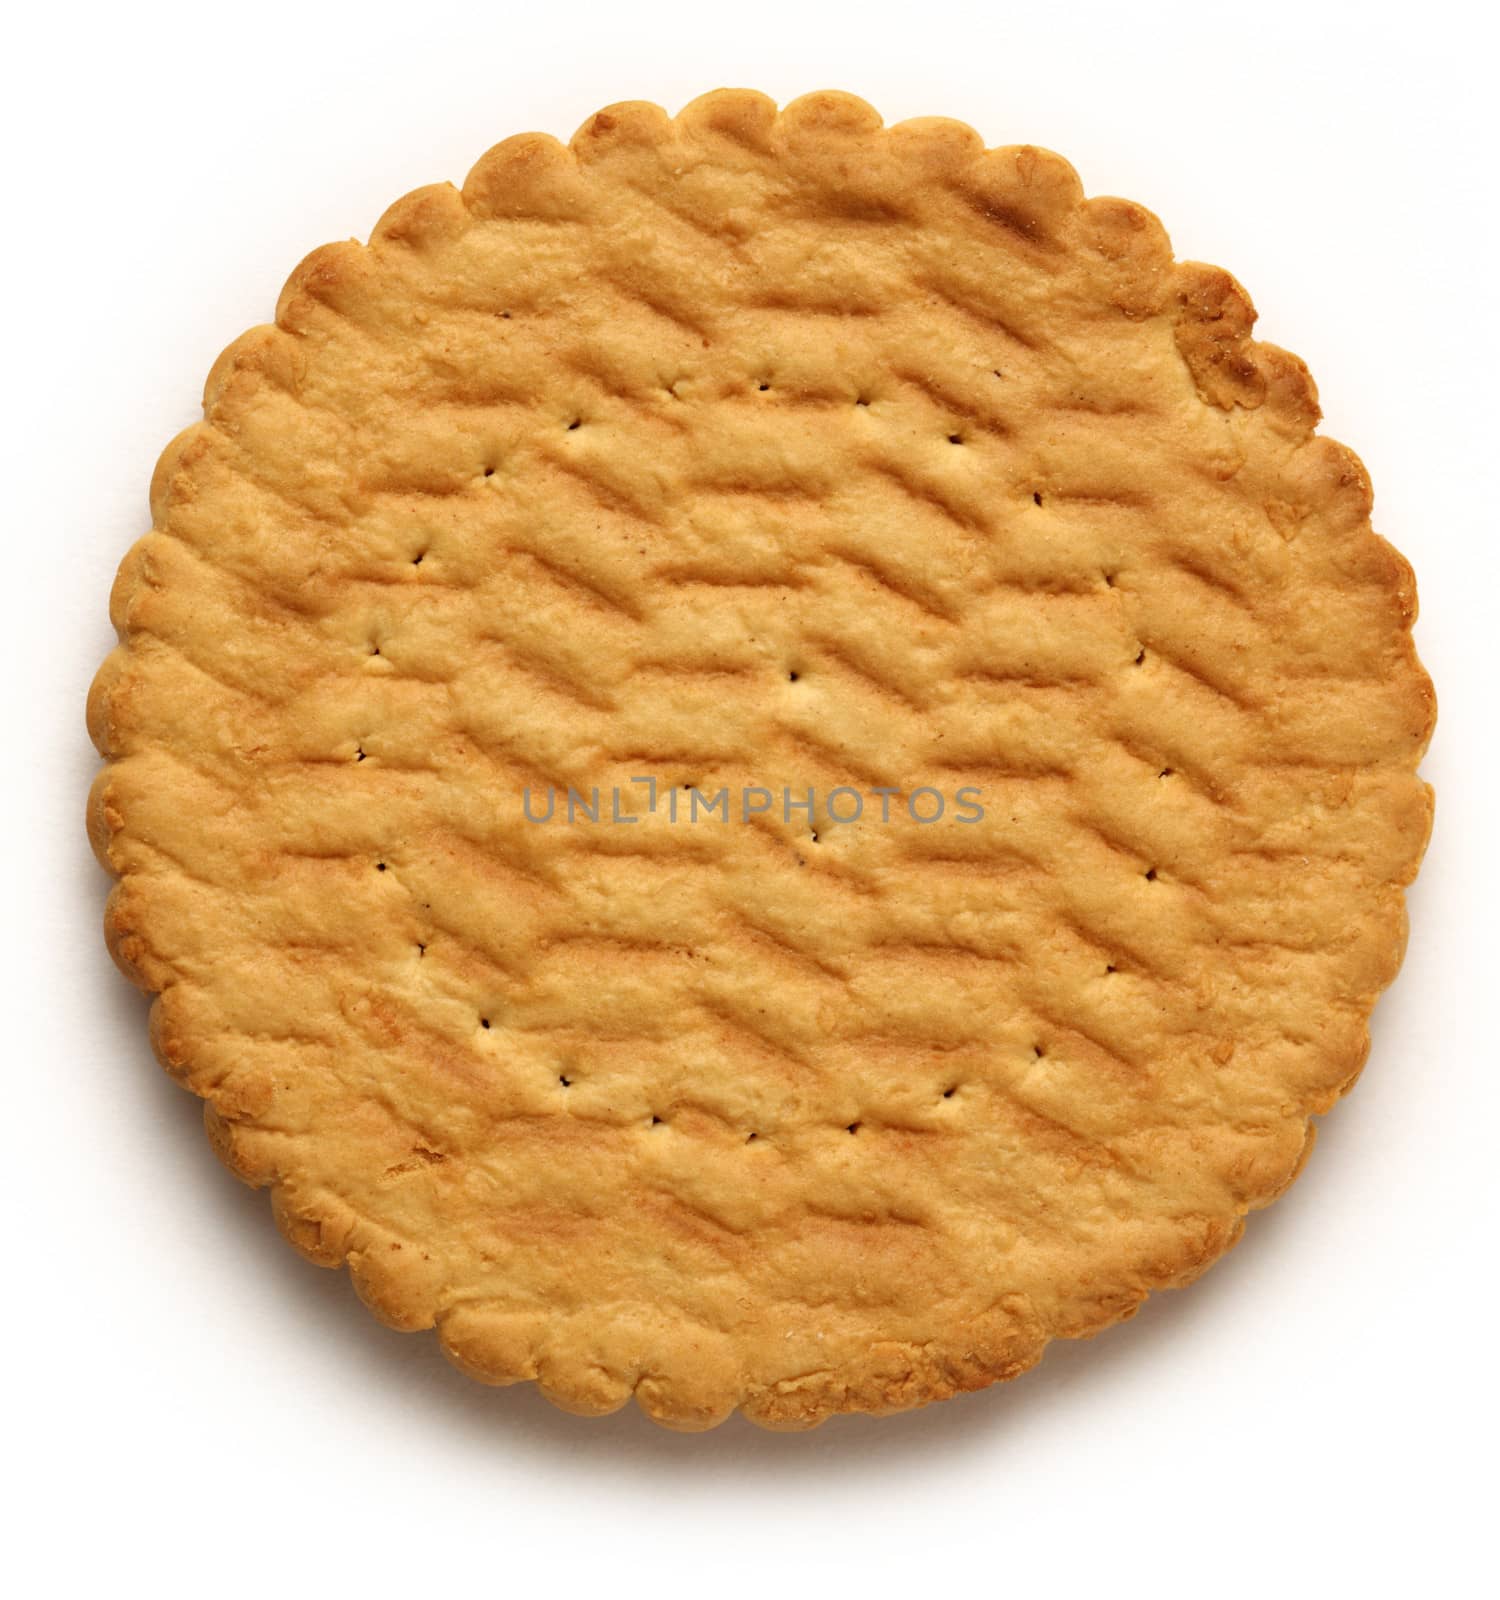 Round biscuit on white background